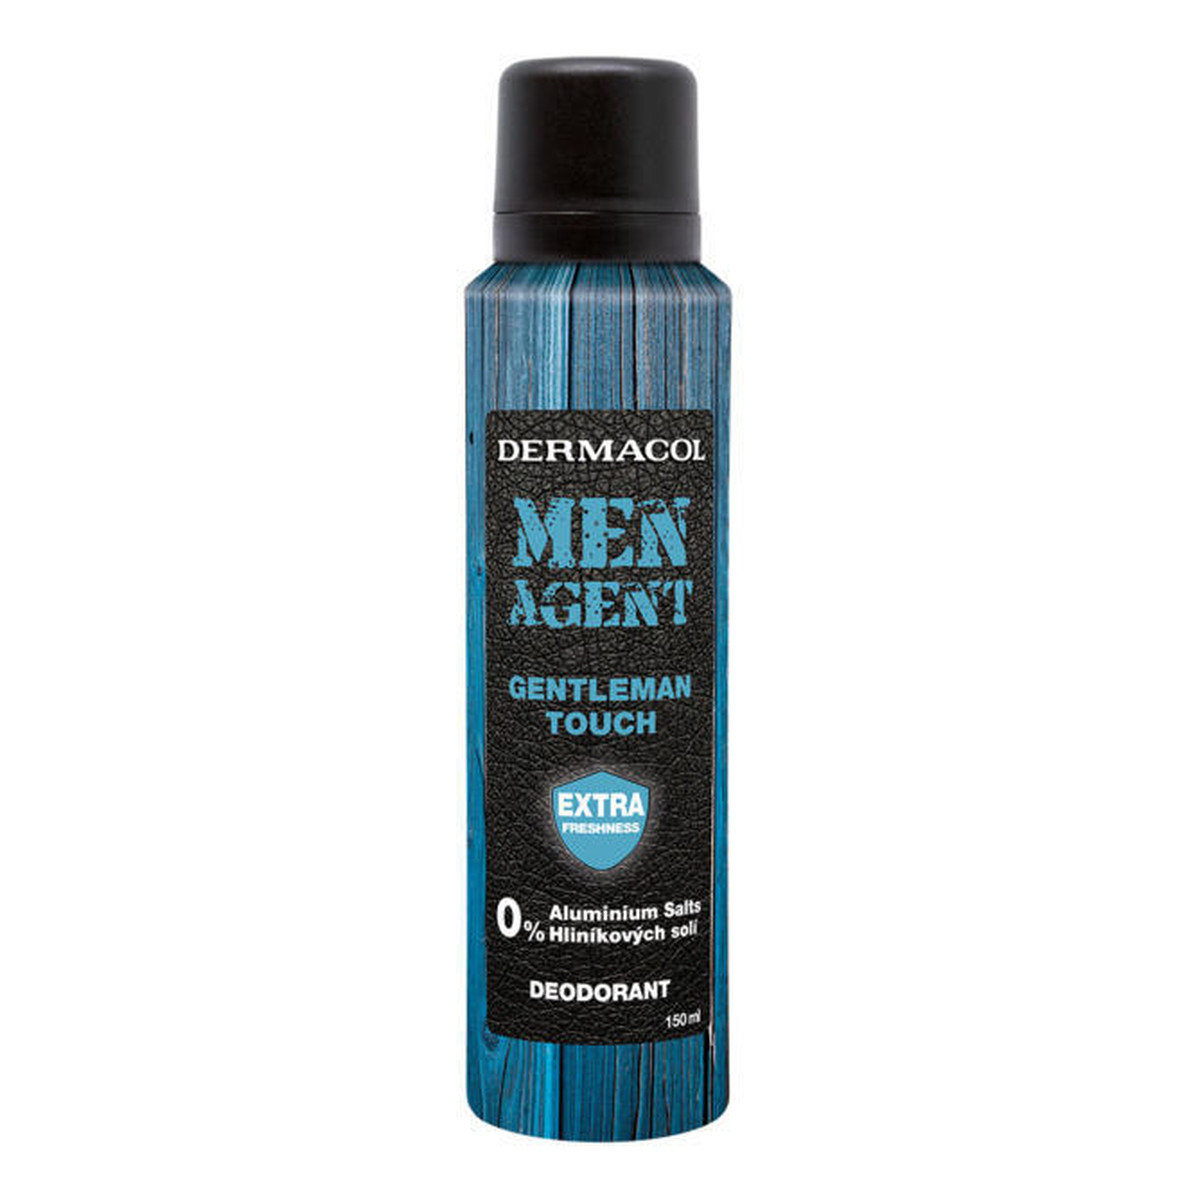 Dermacol MEN AGENT Gentleman Touch dezodorant 150ml